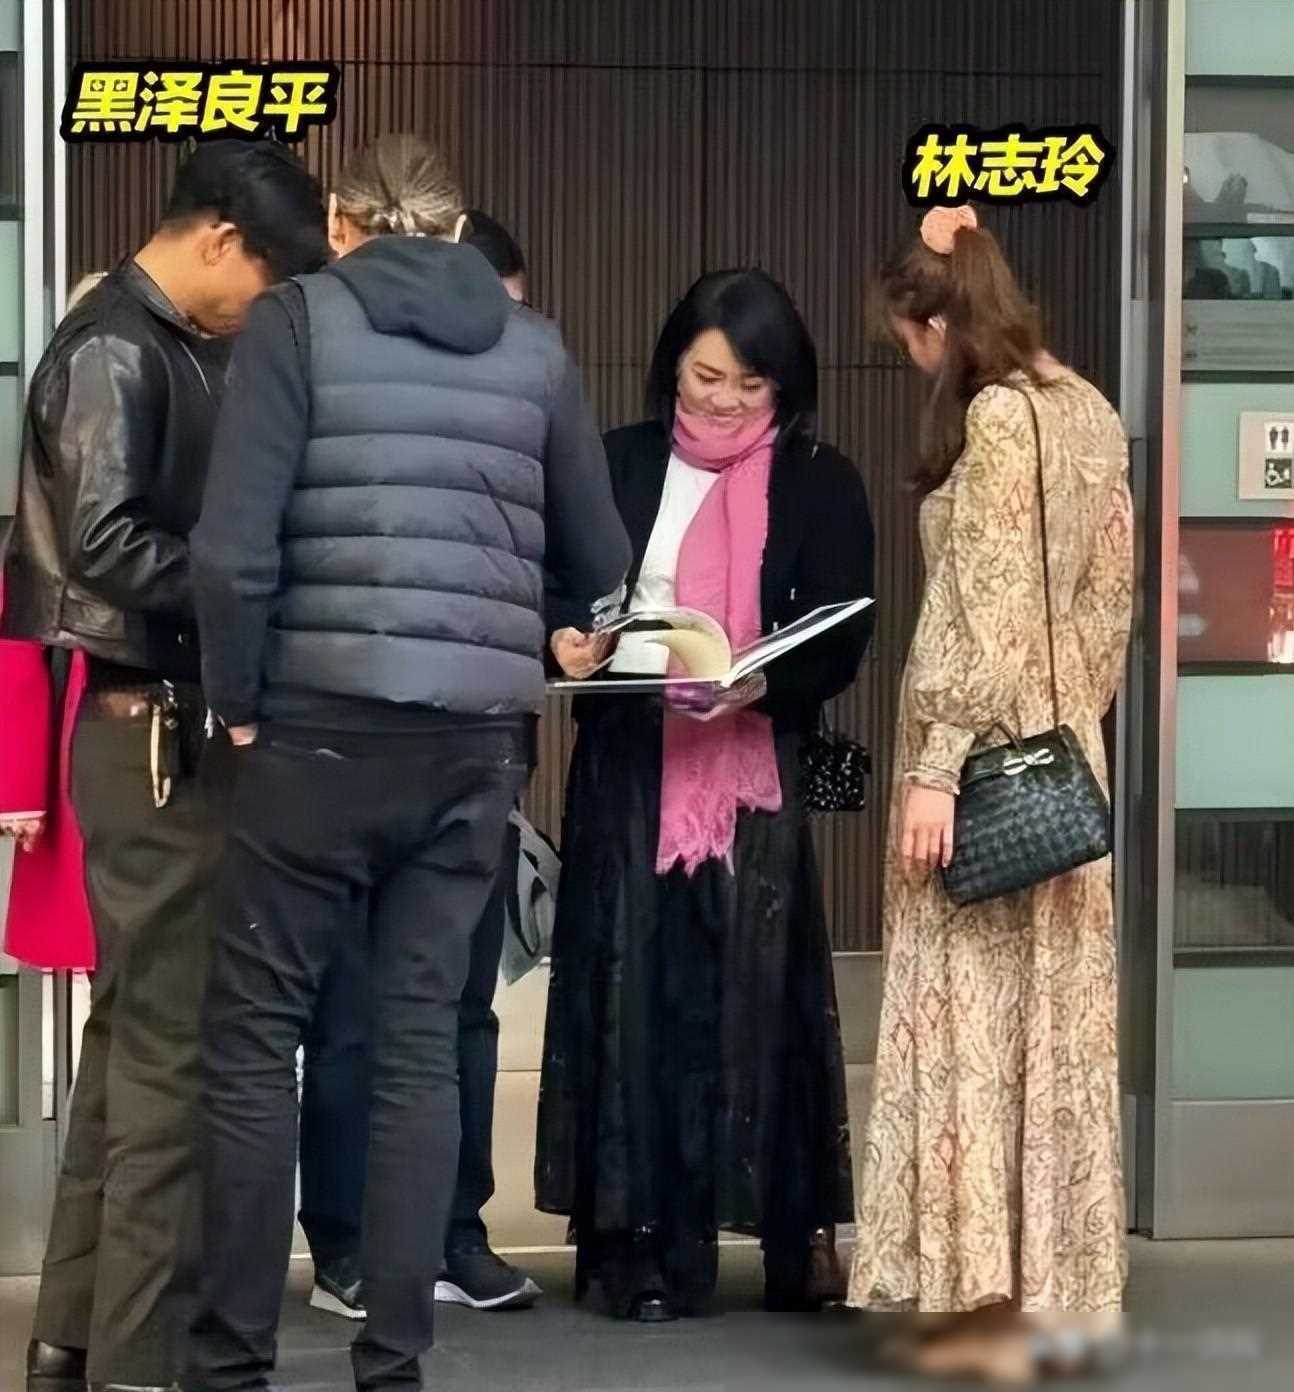 林志玲与老公外出聚餐女方穿着引发诸多争议,指责越来越像日本人